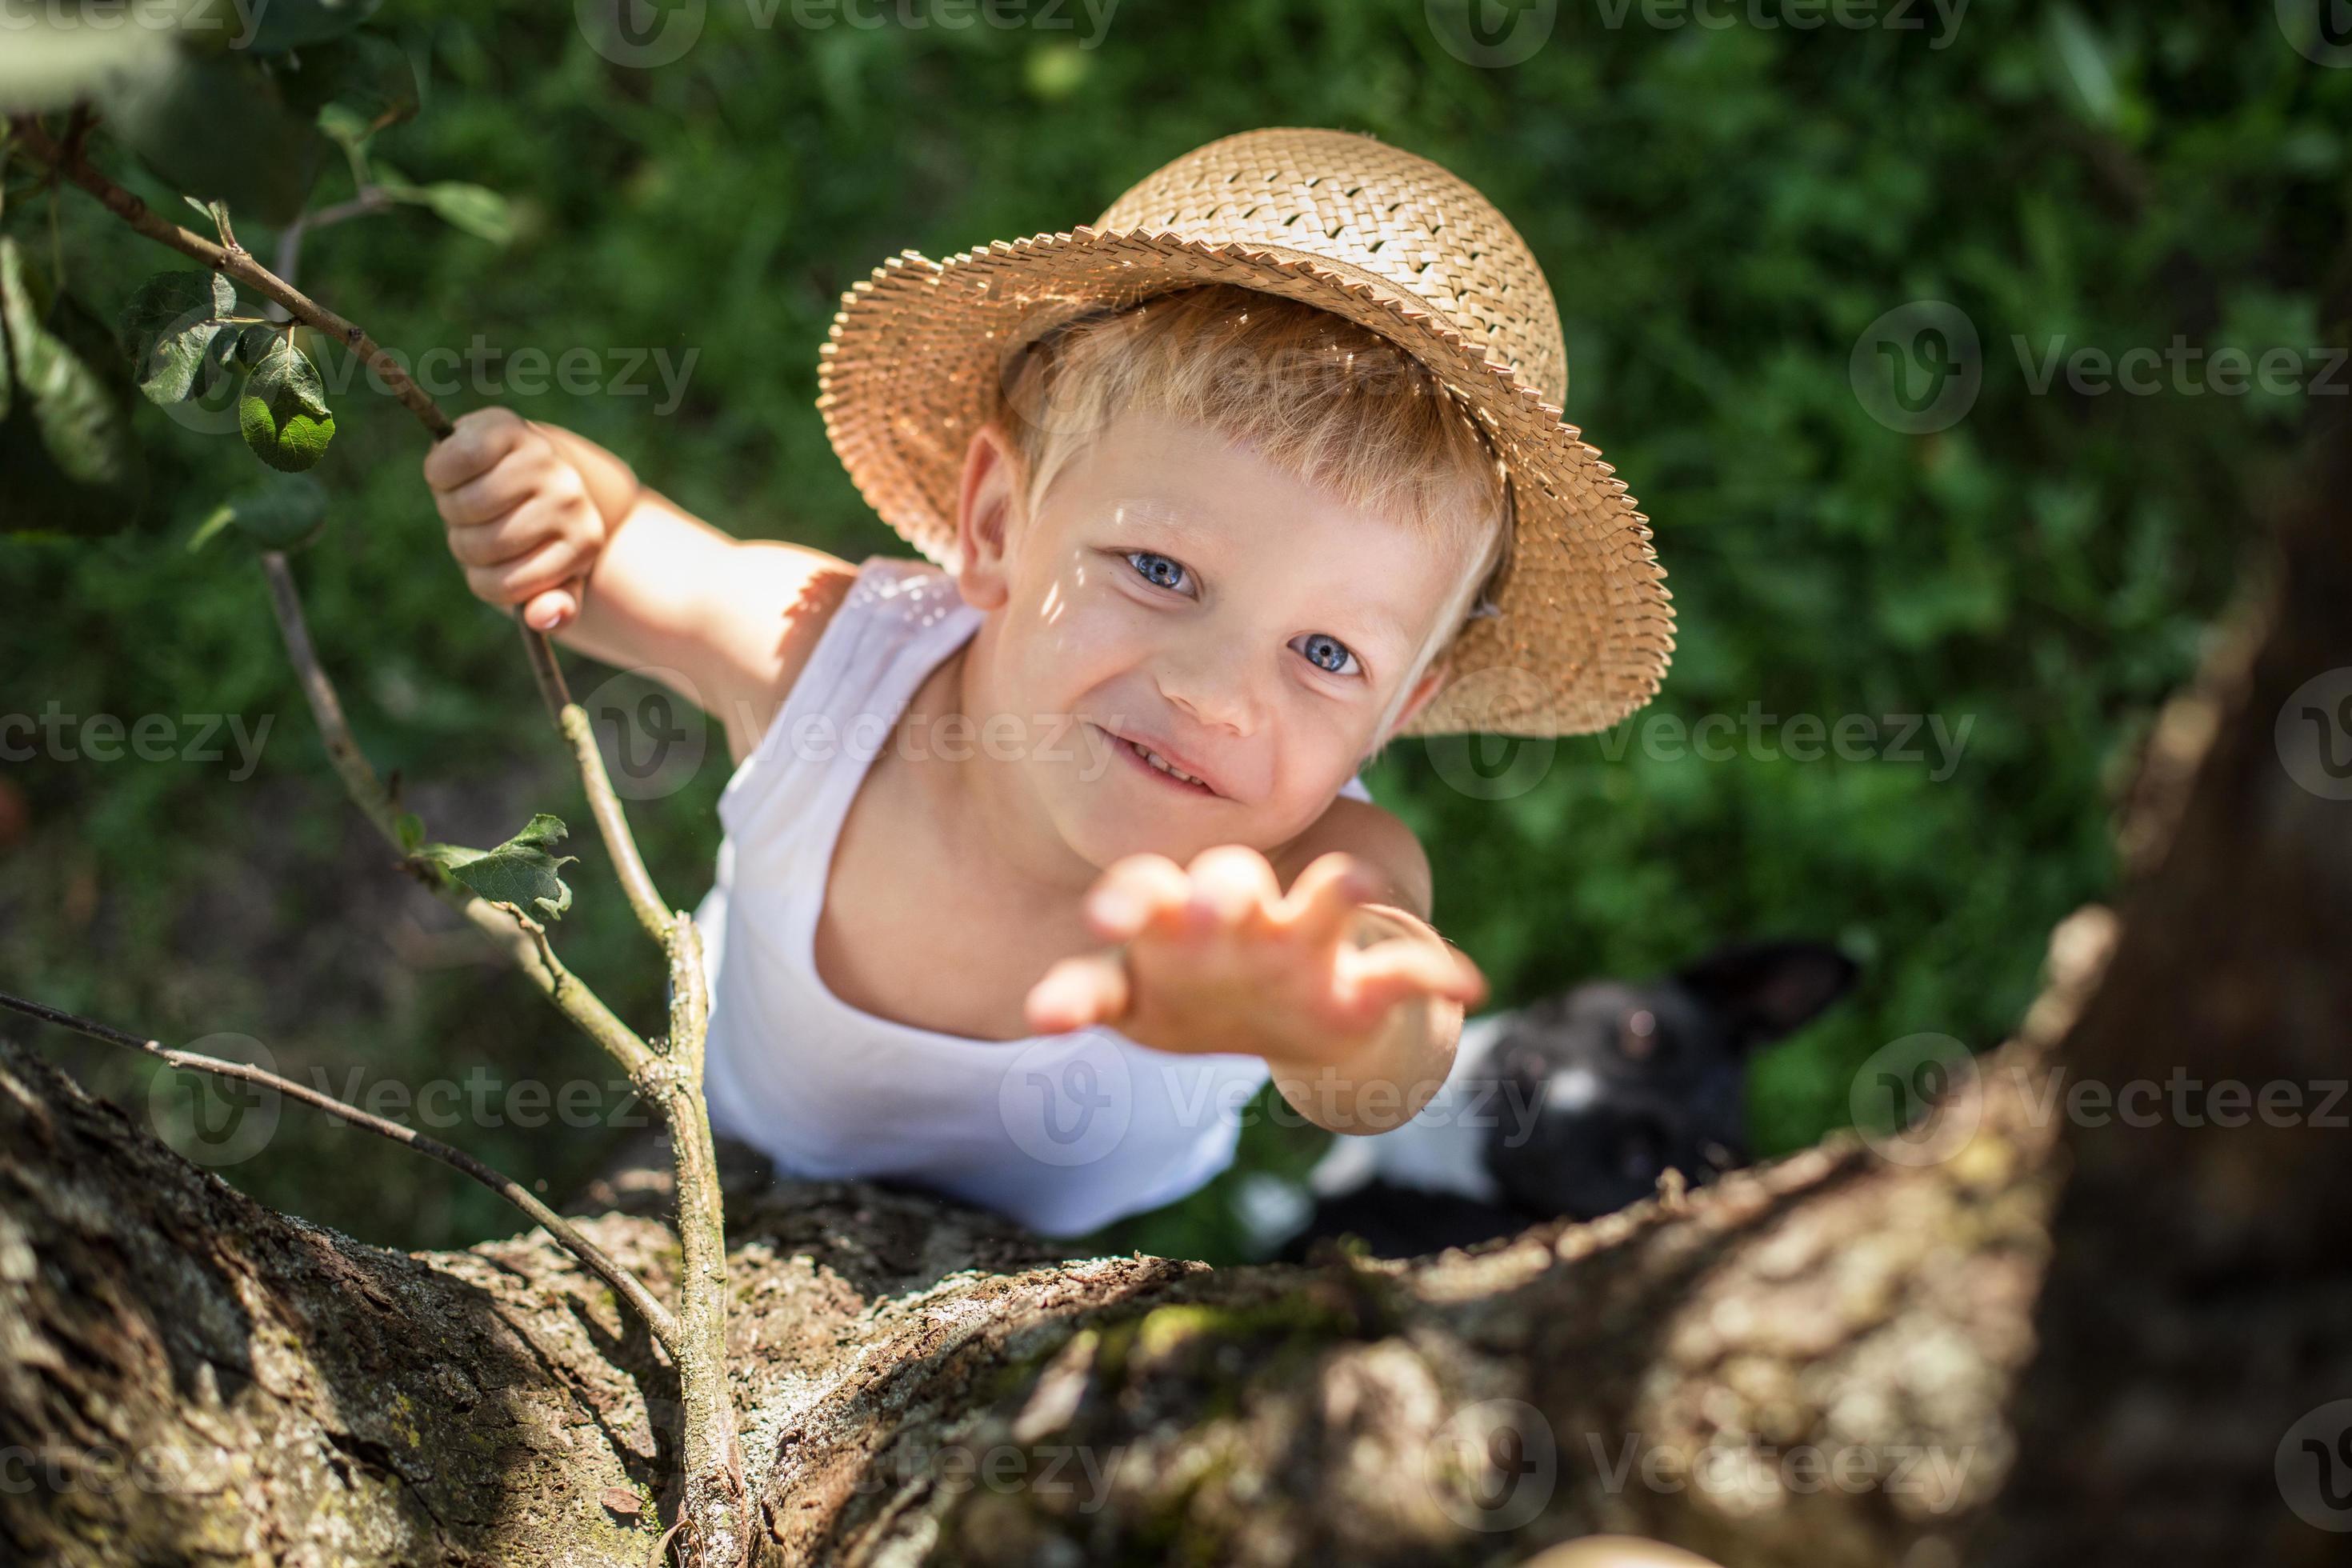 markeerstift Diverse Roman kind met strooien hoed klimt een boom 1221758 stockfoto bij Vecteezy